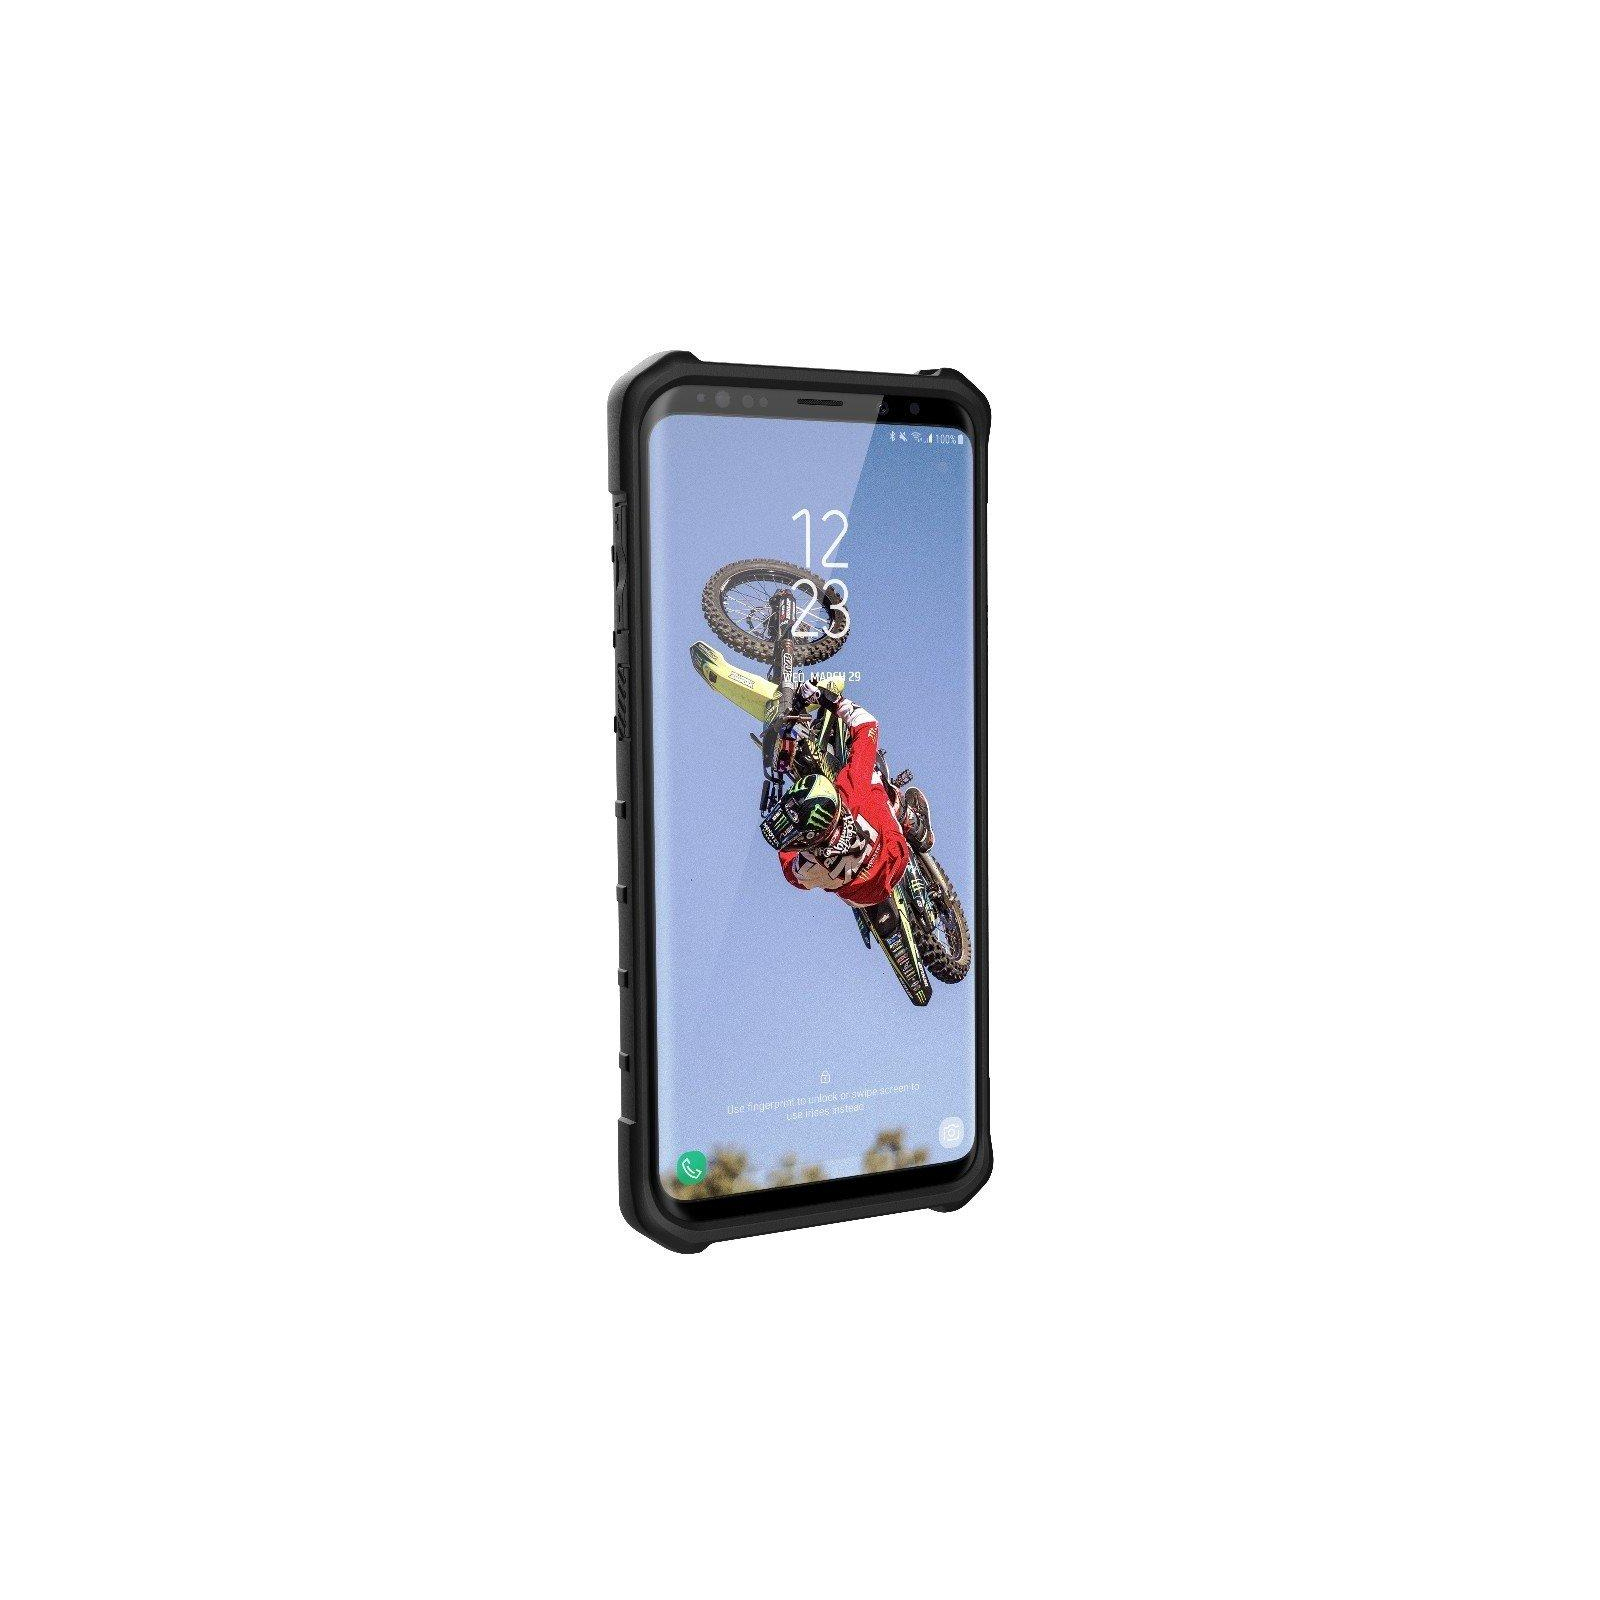 Чехол для мобильного телефона UAG Galaxy S9+ Pathfinder Black (GLXS9PLS-A-BK) изображение 5